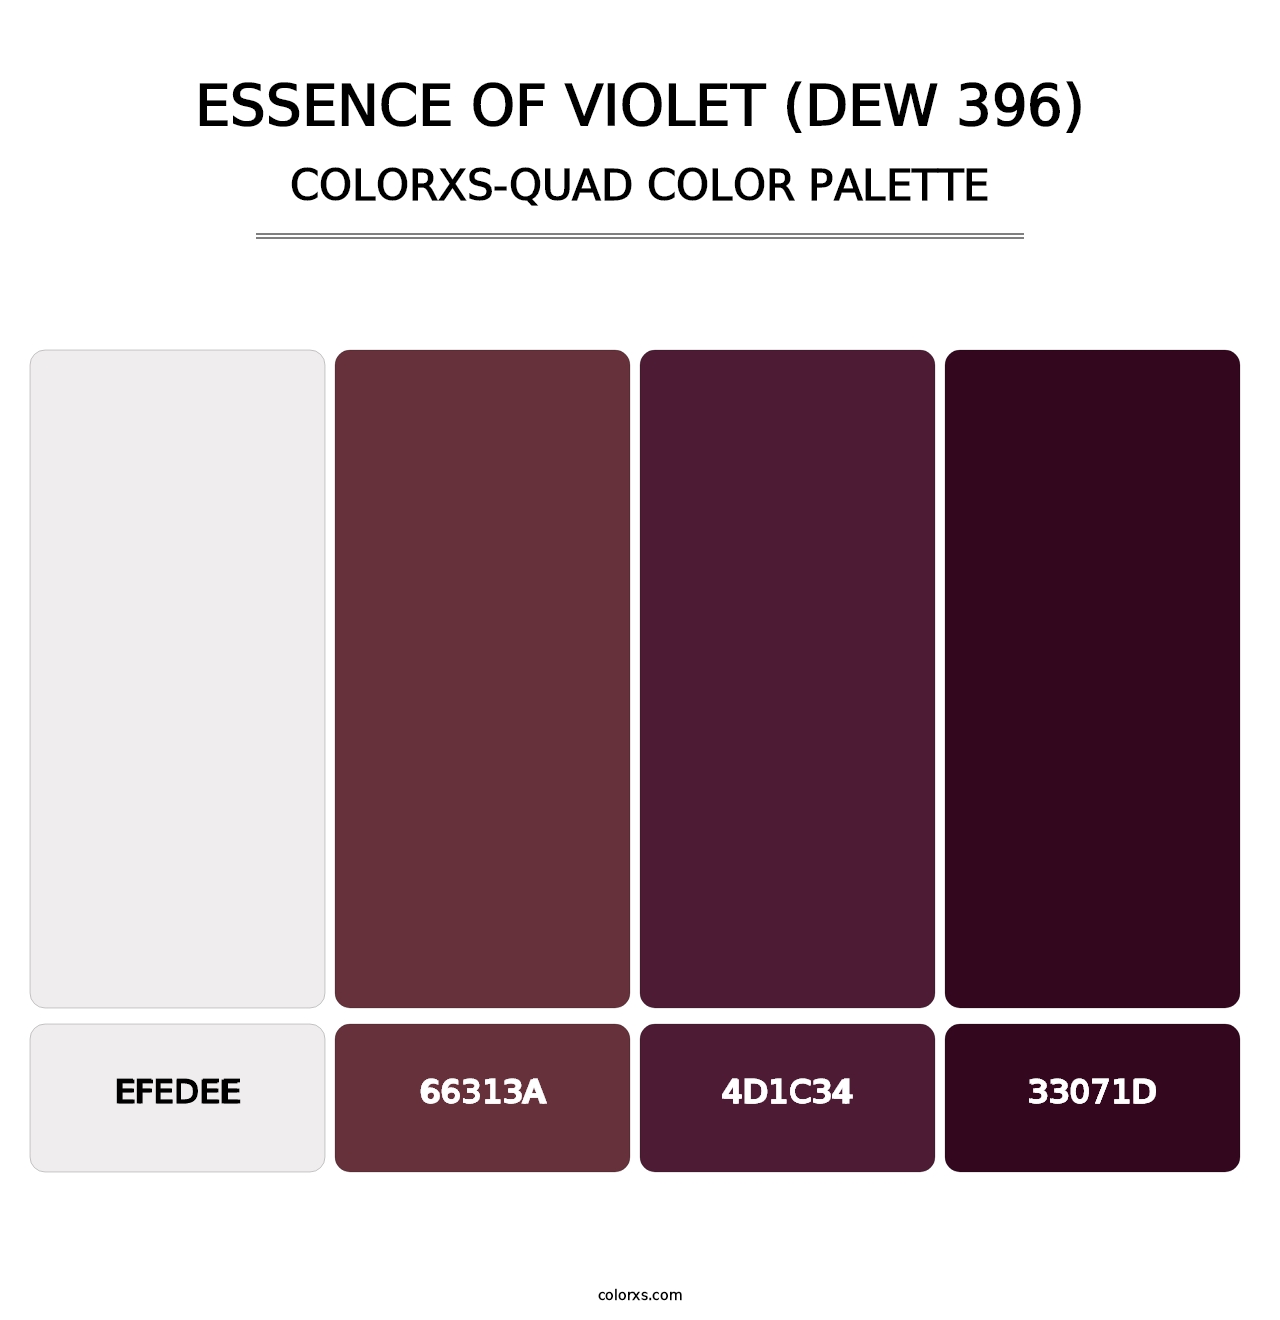 Essence of Violet (DEW 396) - Colorxs Quad Palette